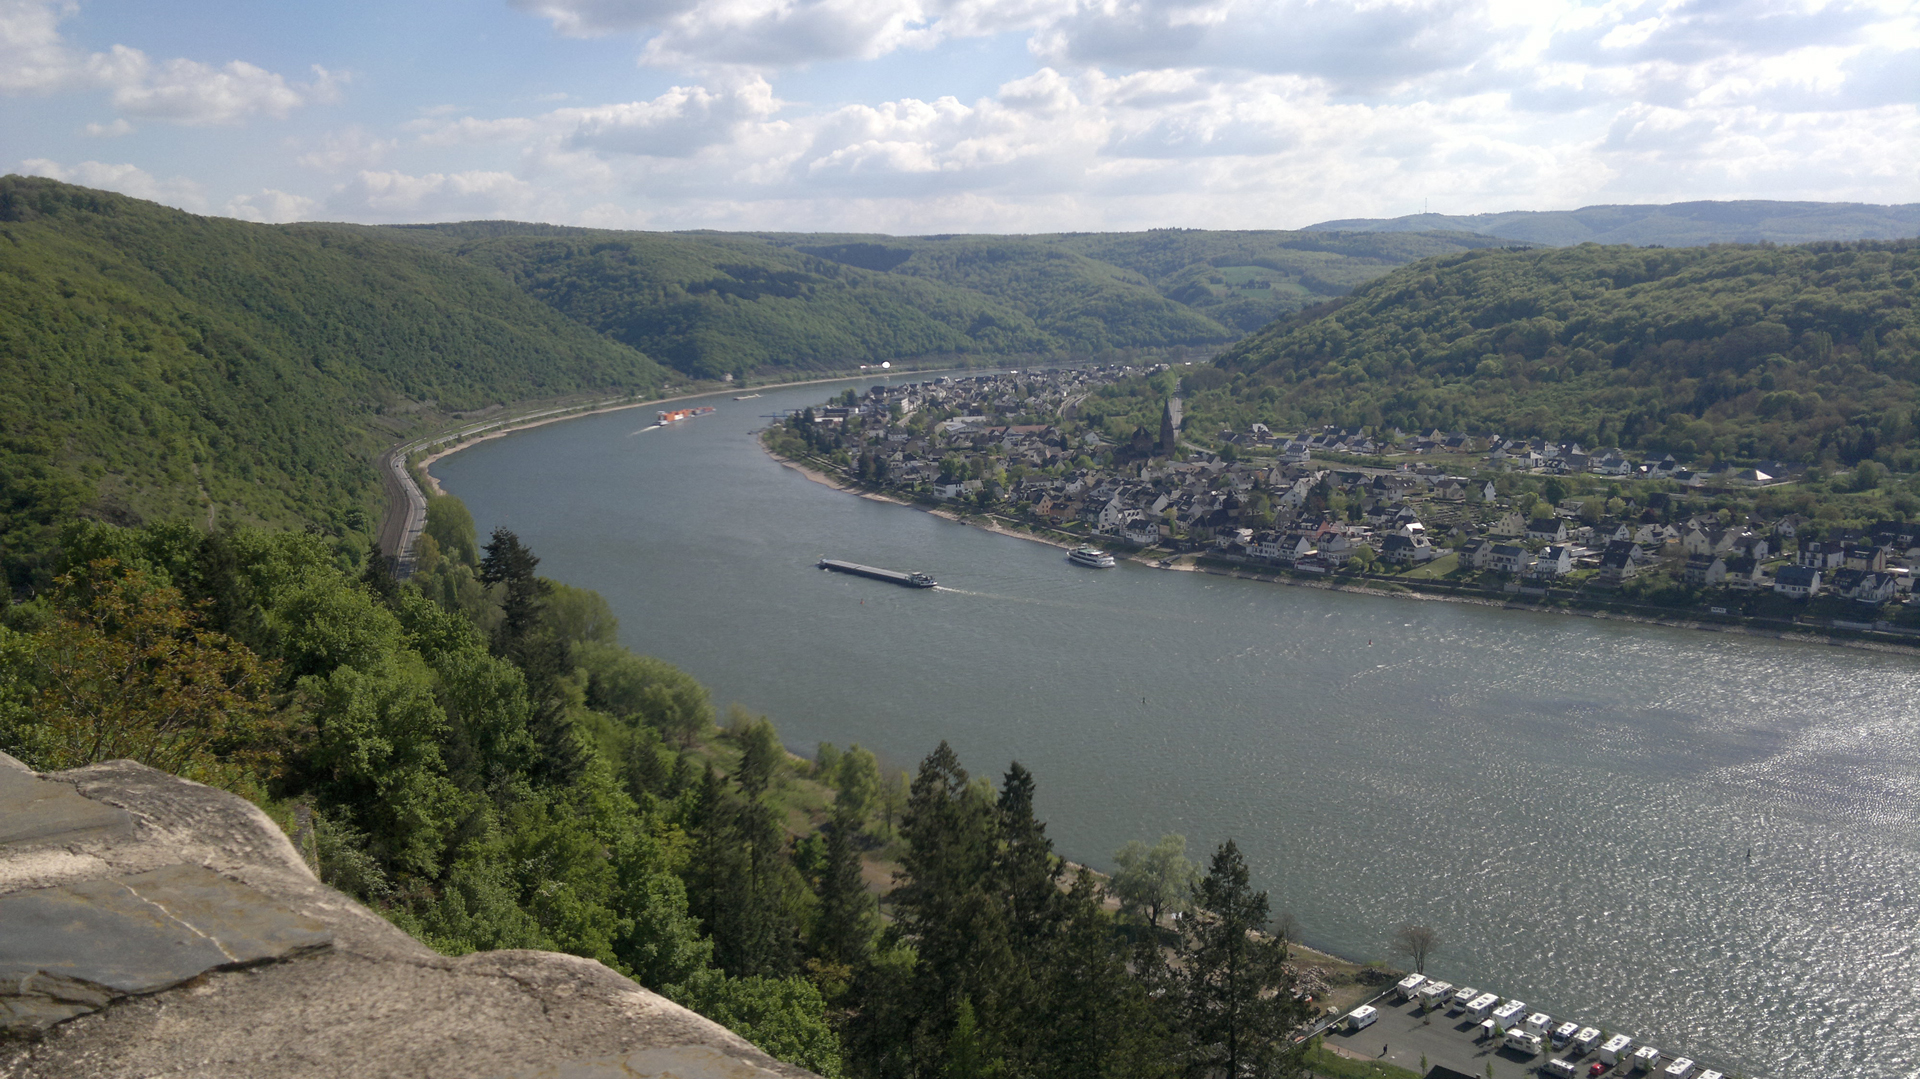 korkealta kuvattu näkymä Reinille, jokilaivoja